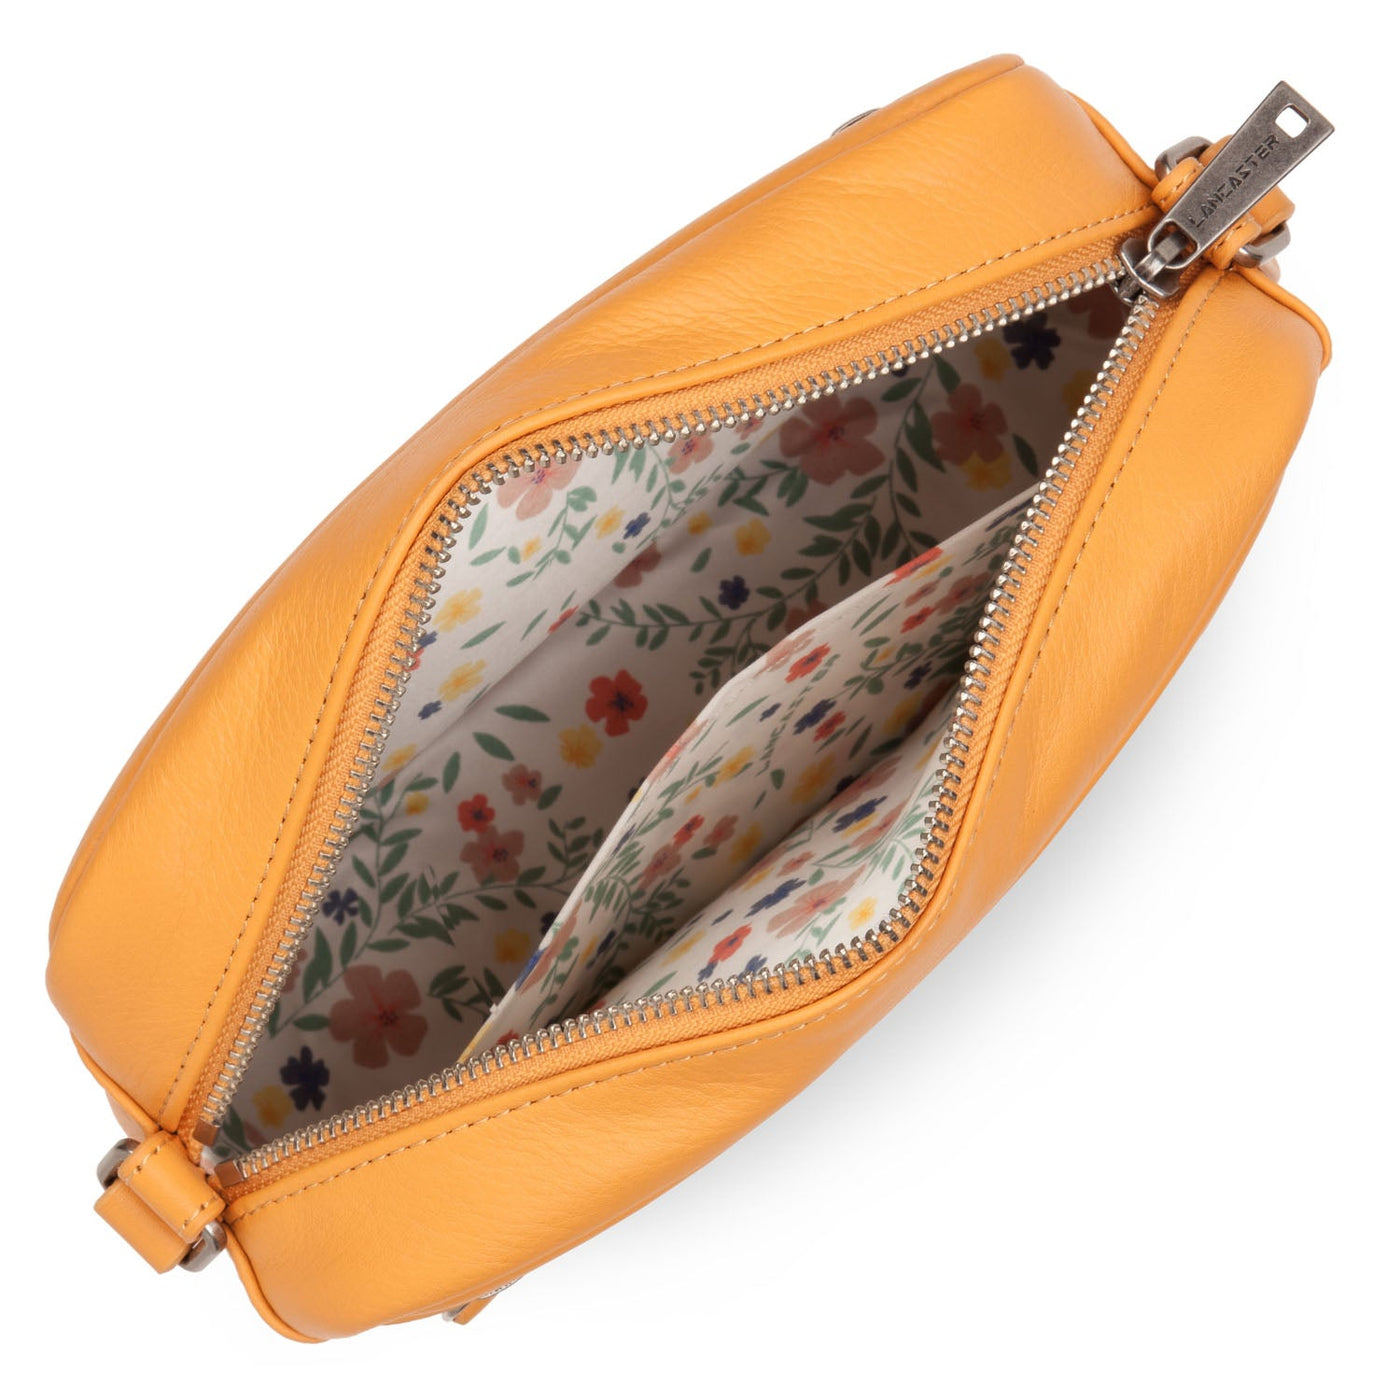 crossbody bag - soft vintage #couleur_safran